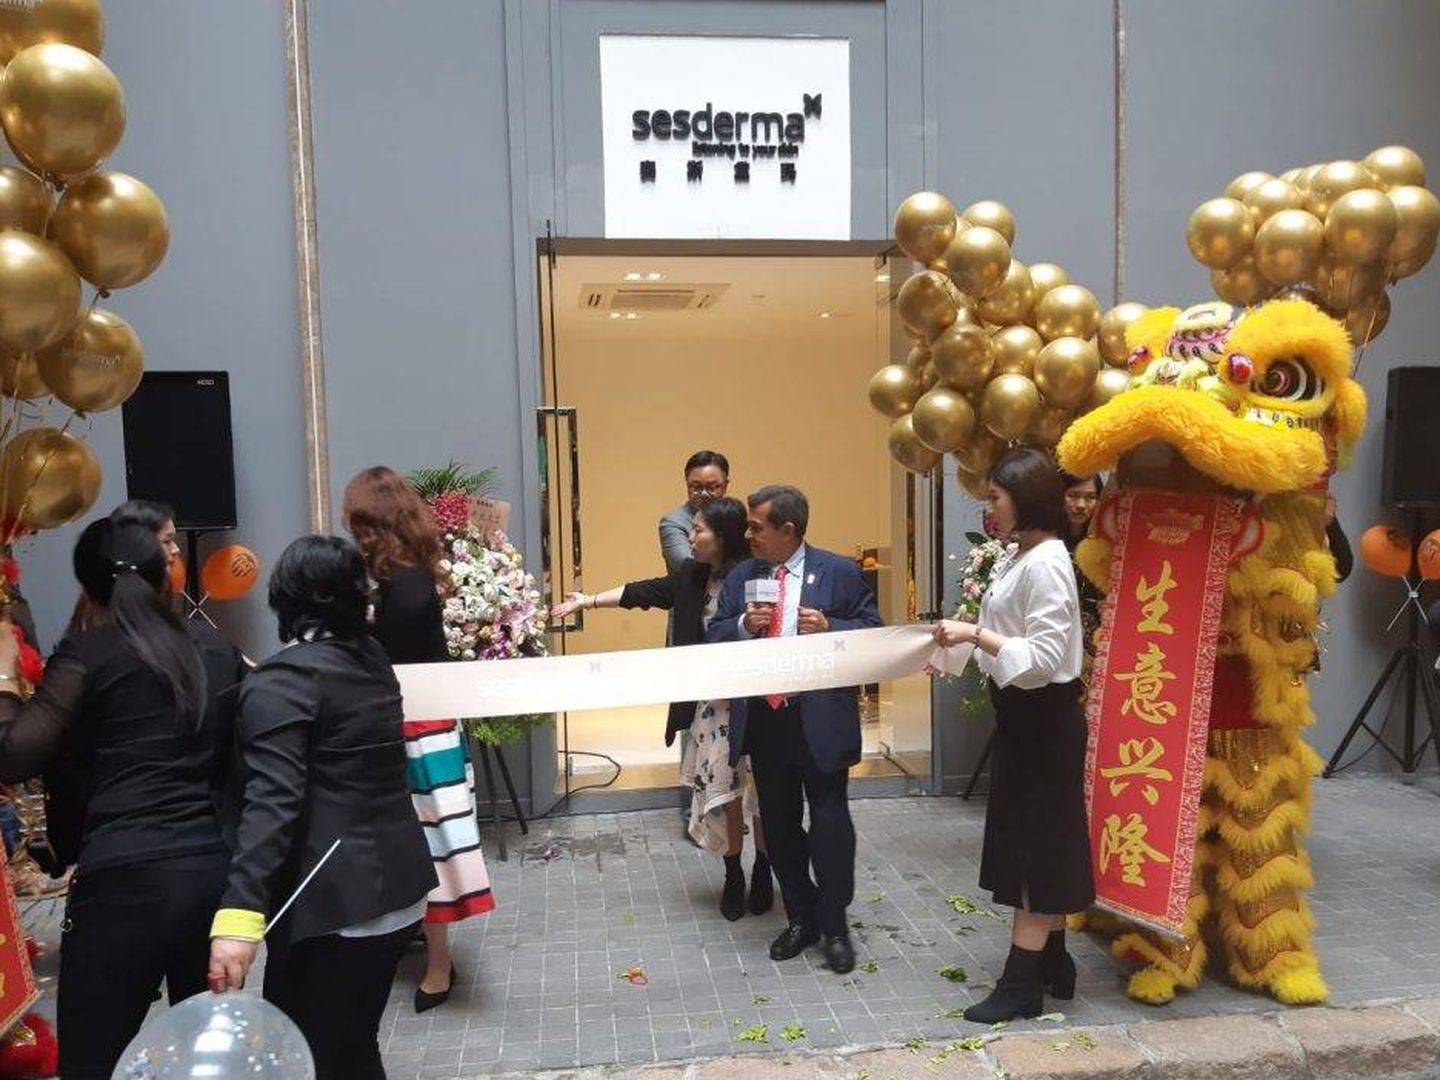 Inauguración de la oficina en China. (Sesderma)